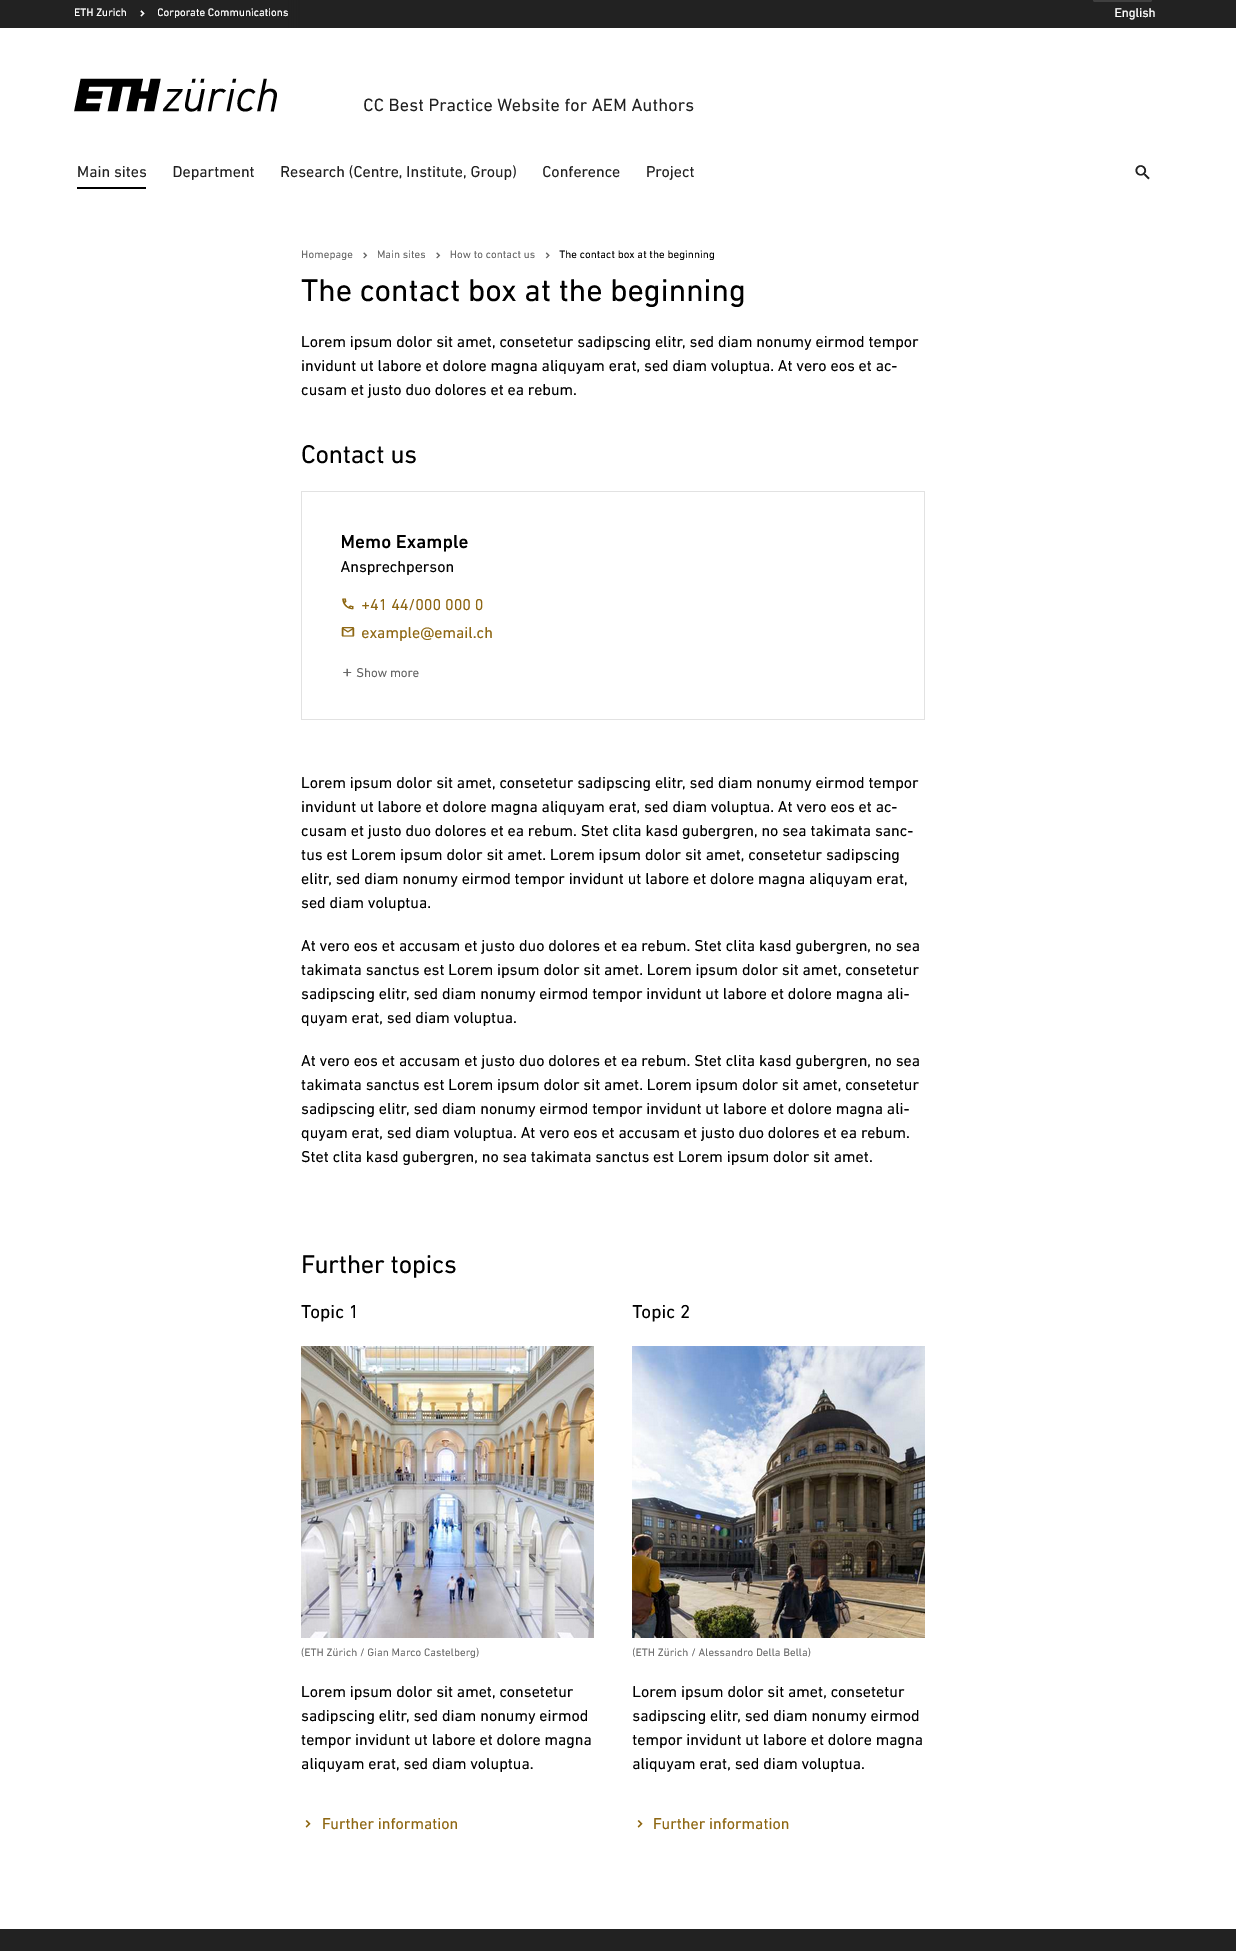 Vergrösserte Ansicht: Screenshot Webpage: The contact box at the beginning